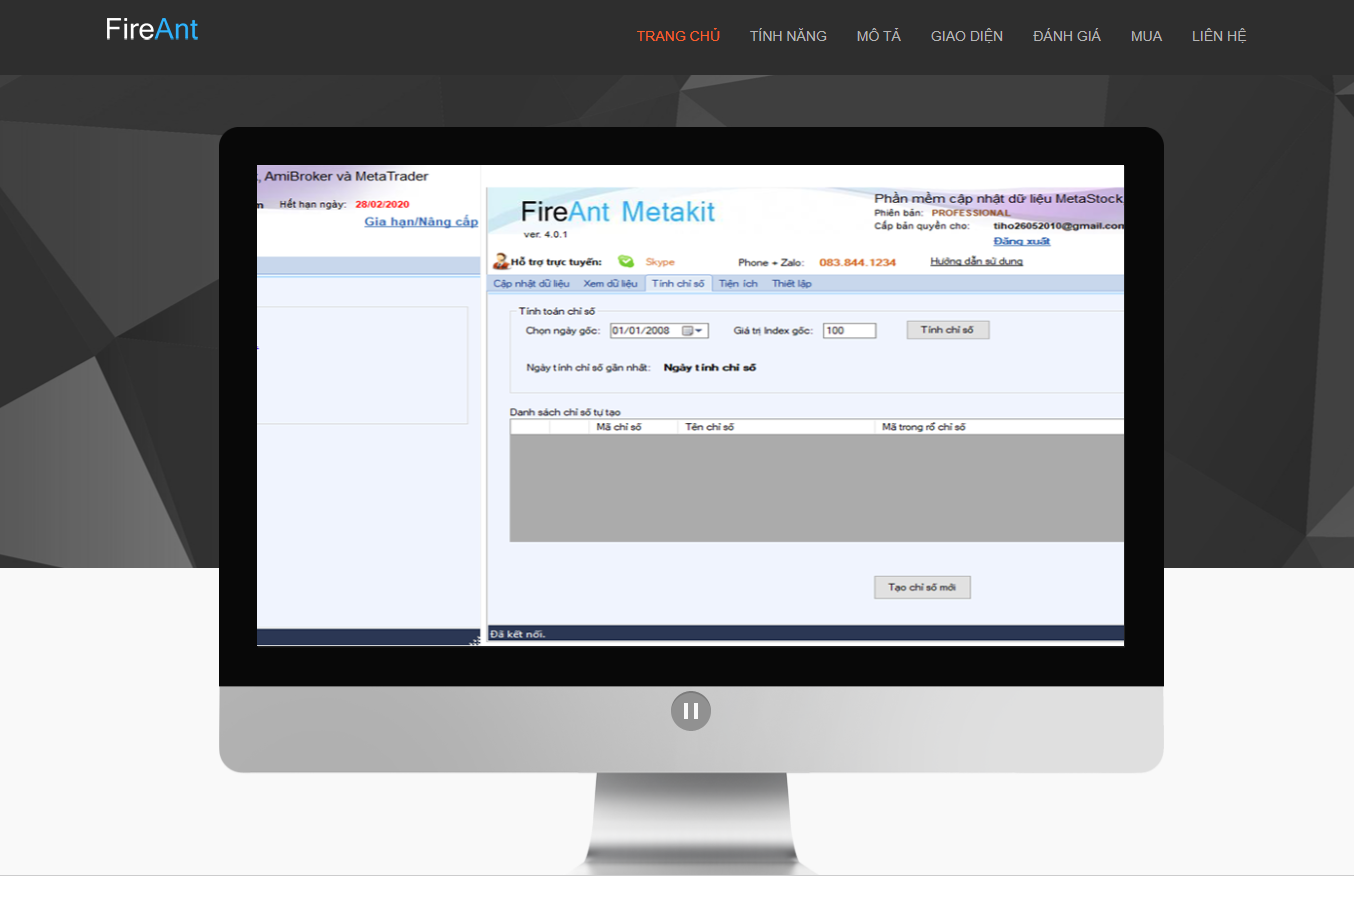 FireAnt còn cung cấp FireAnt Metakit - Phần mềm cập nhật dữ liệu được đánh giá tốt nhất